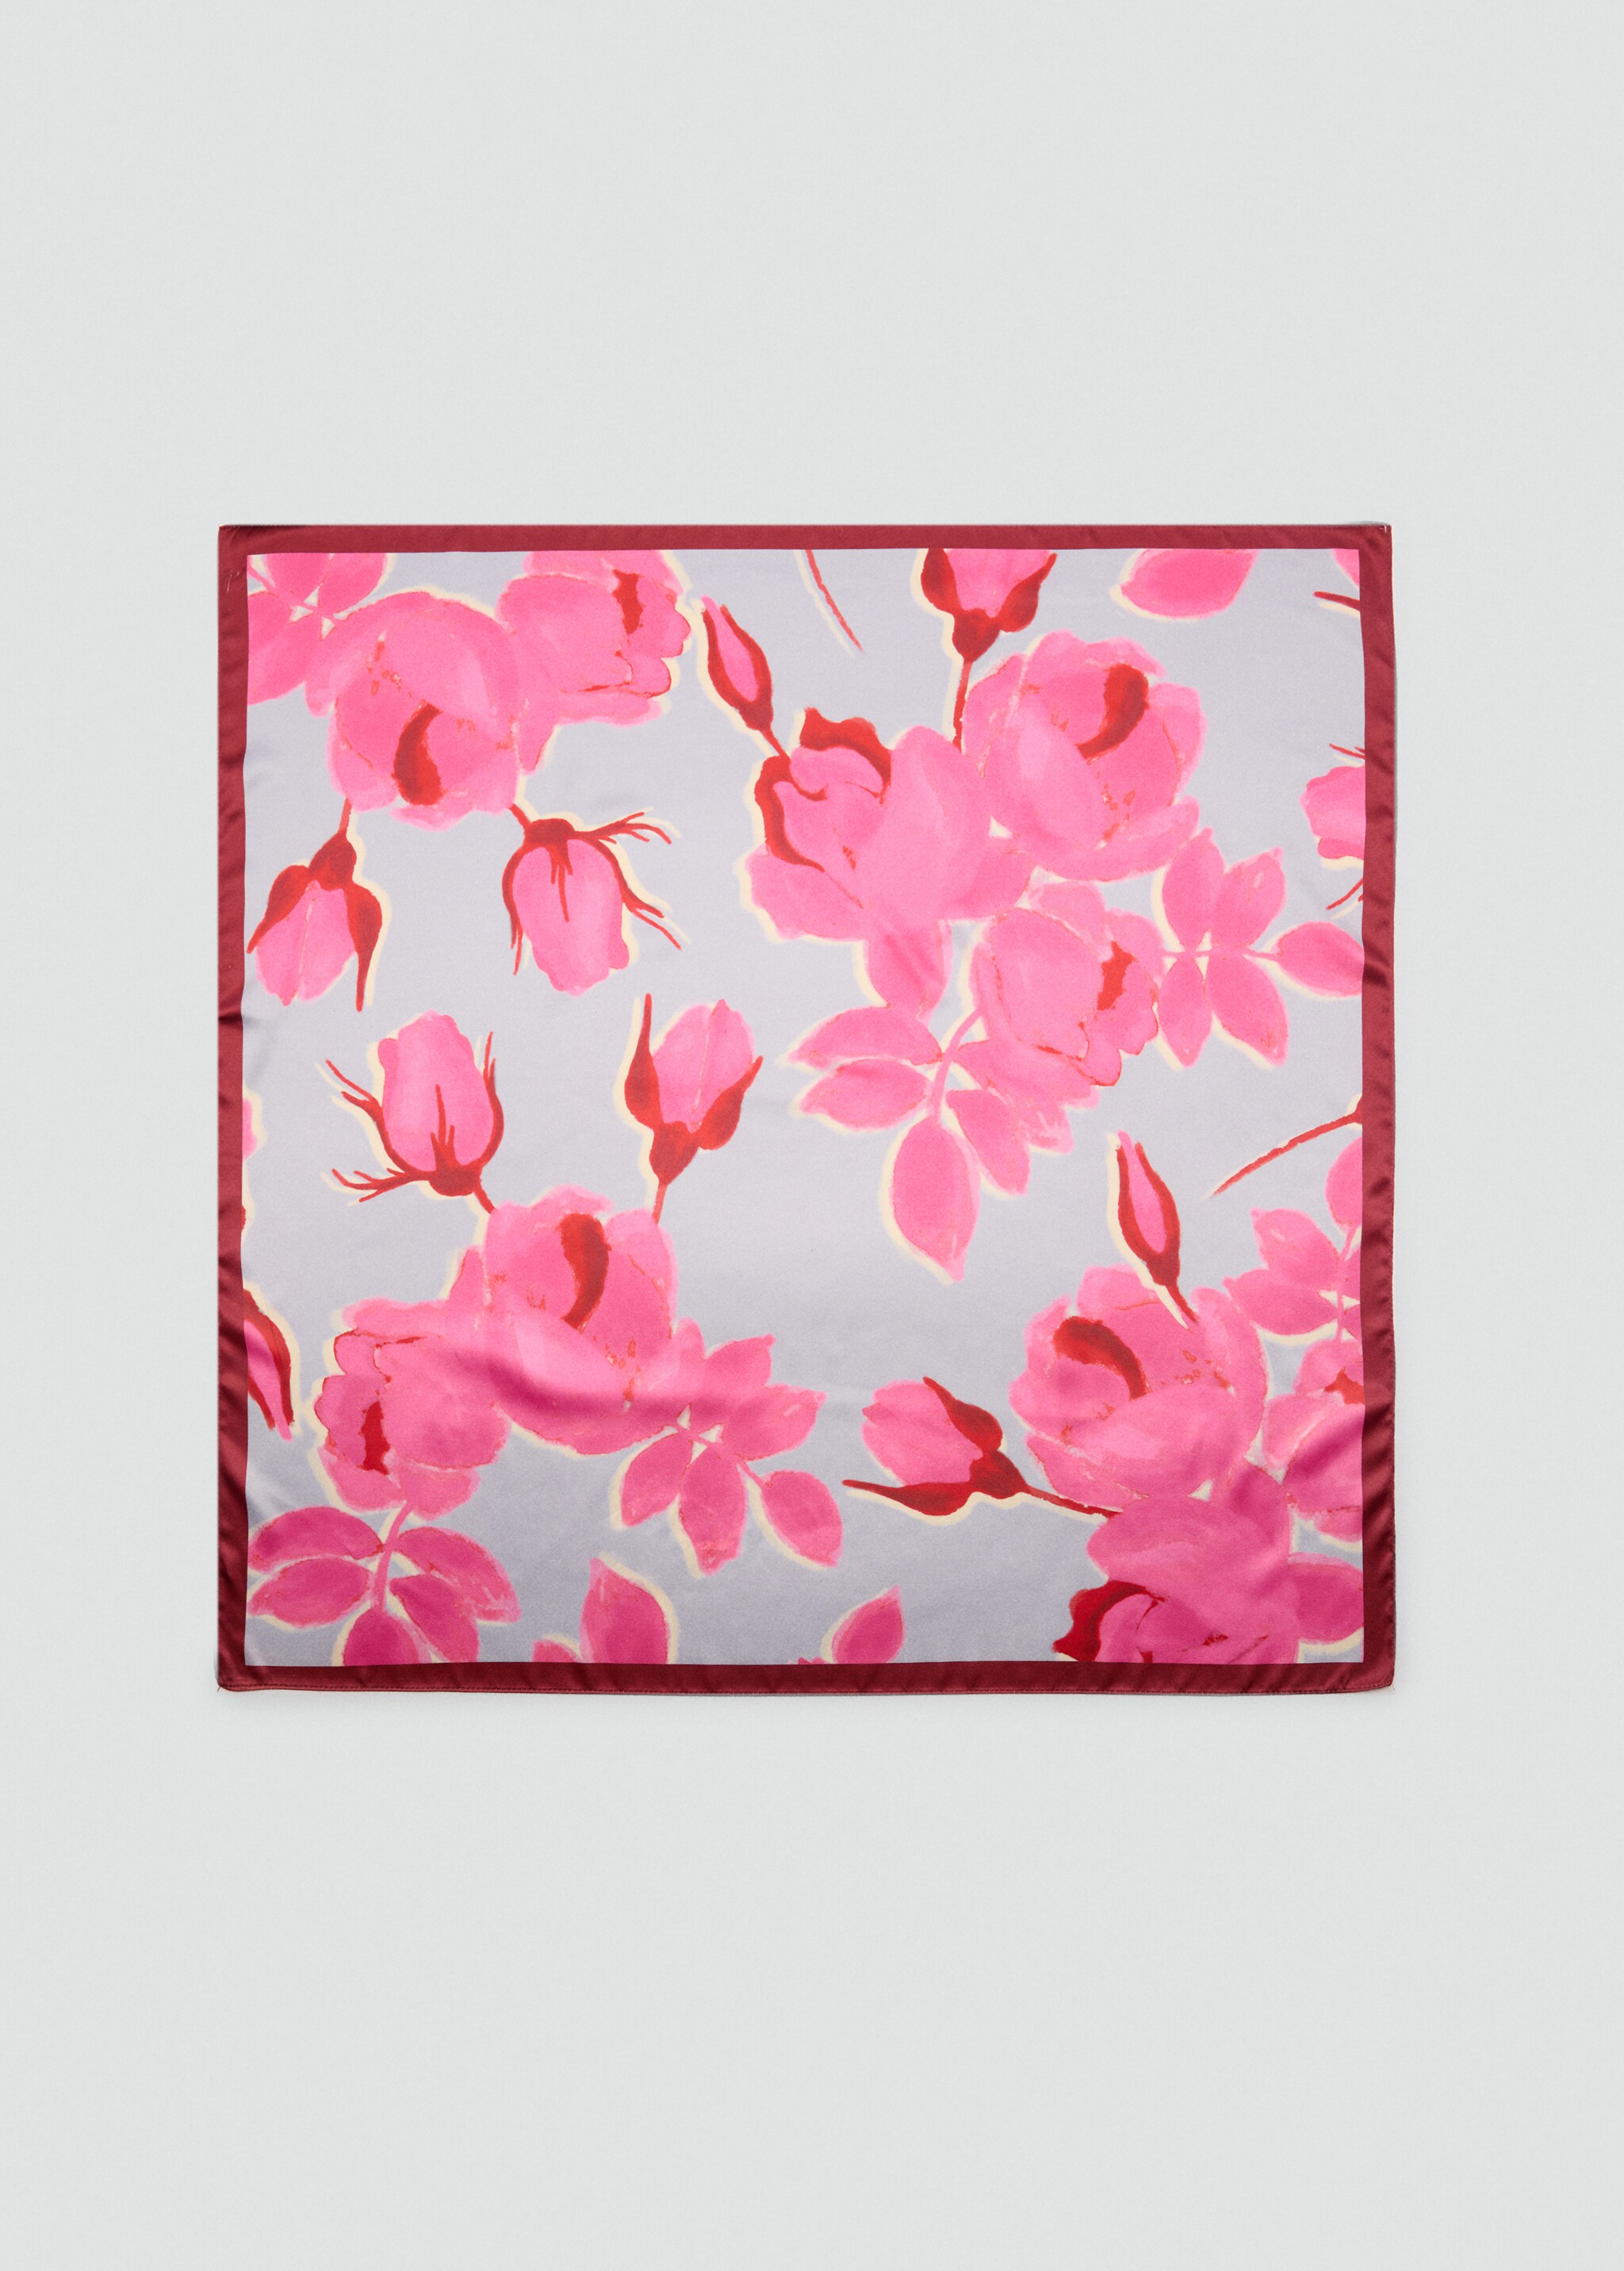 Pañuelo estampado floral - Artículo sin modelo